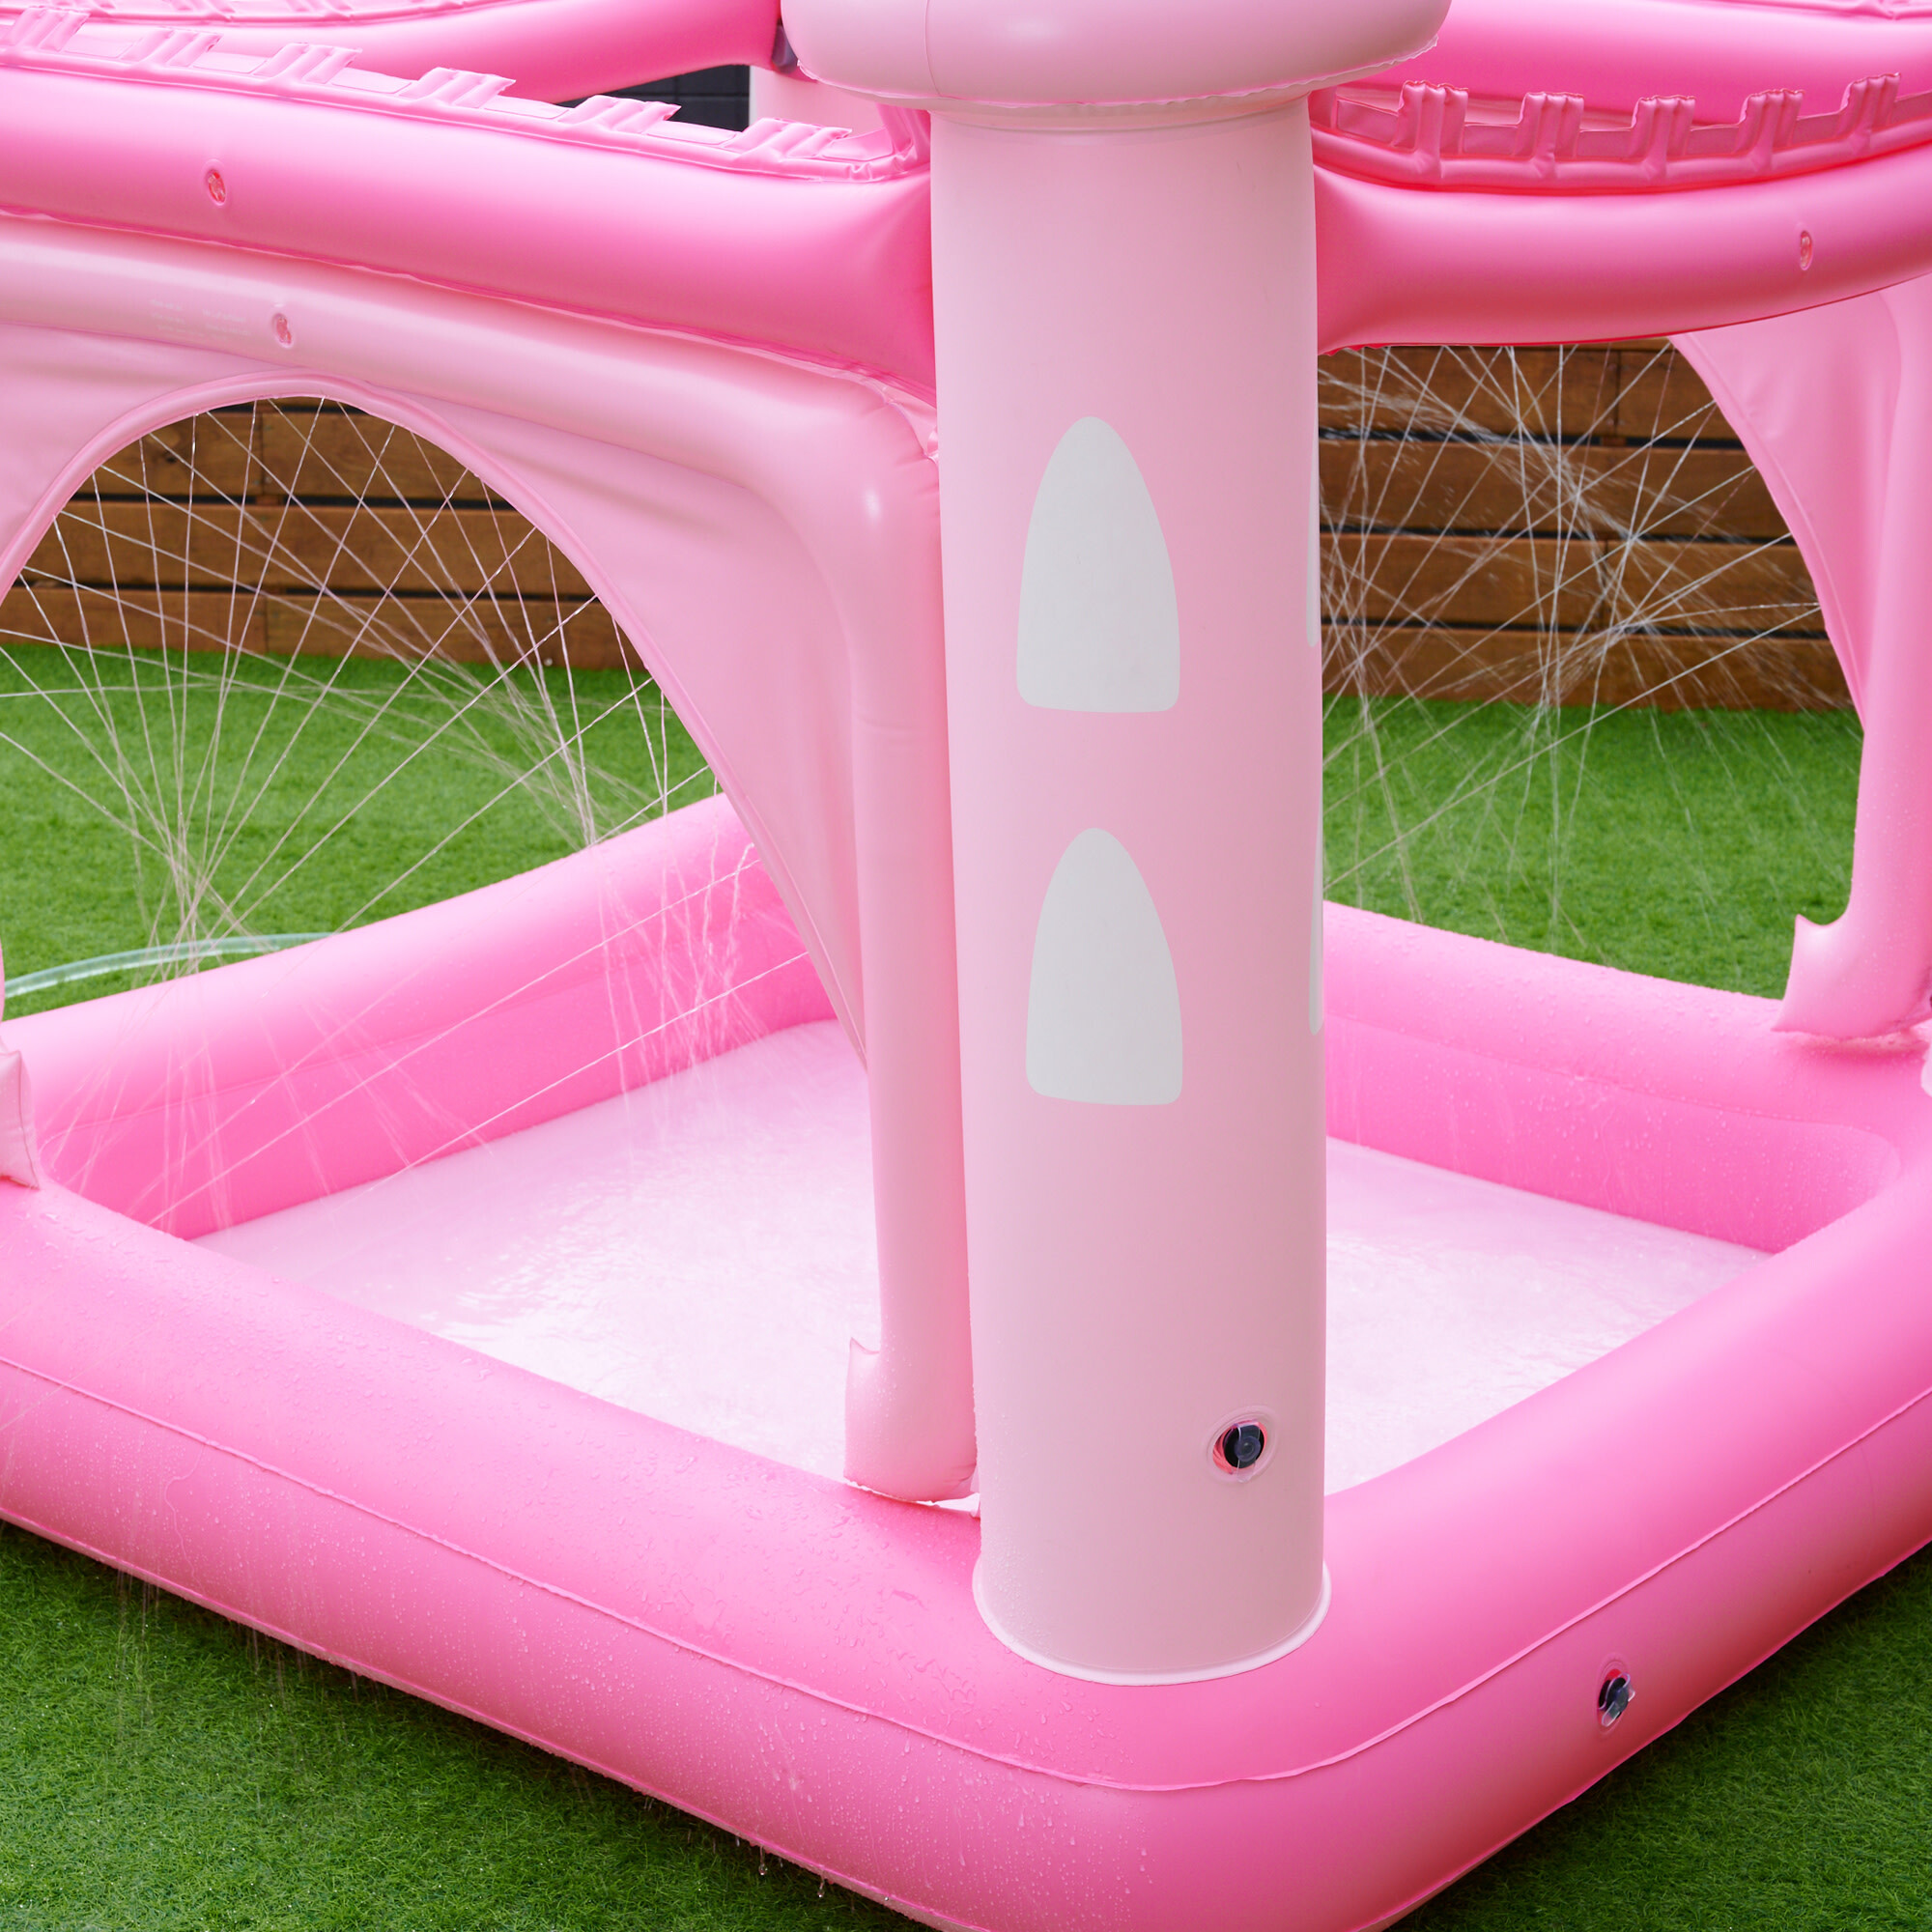 Water Fun Castle Inflatable Kiddie Pool, Pink, 2020 - Teamson Kids 